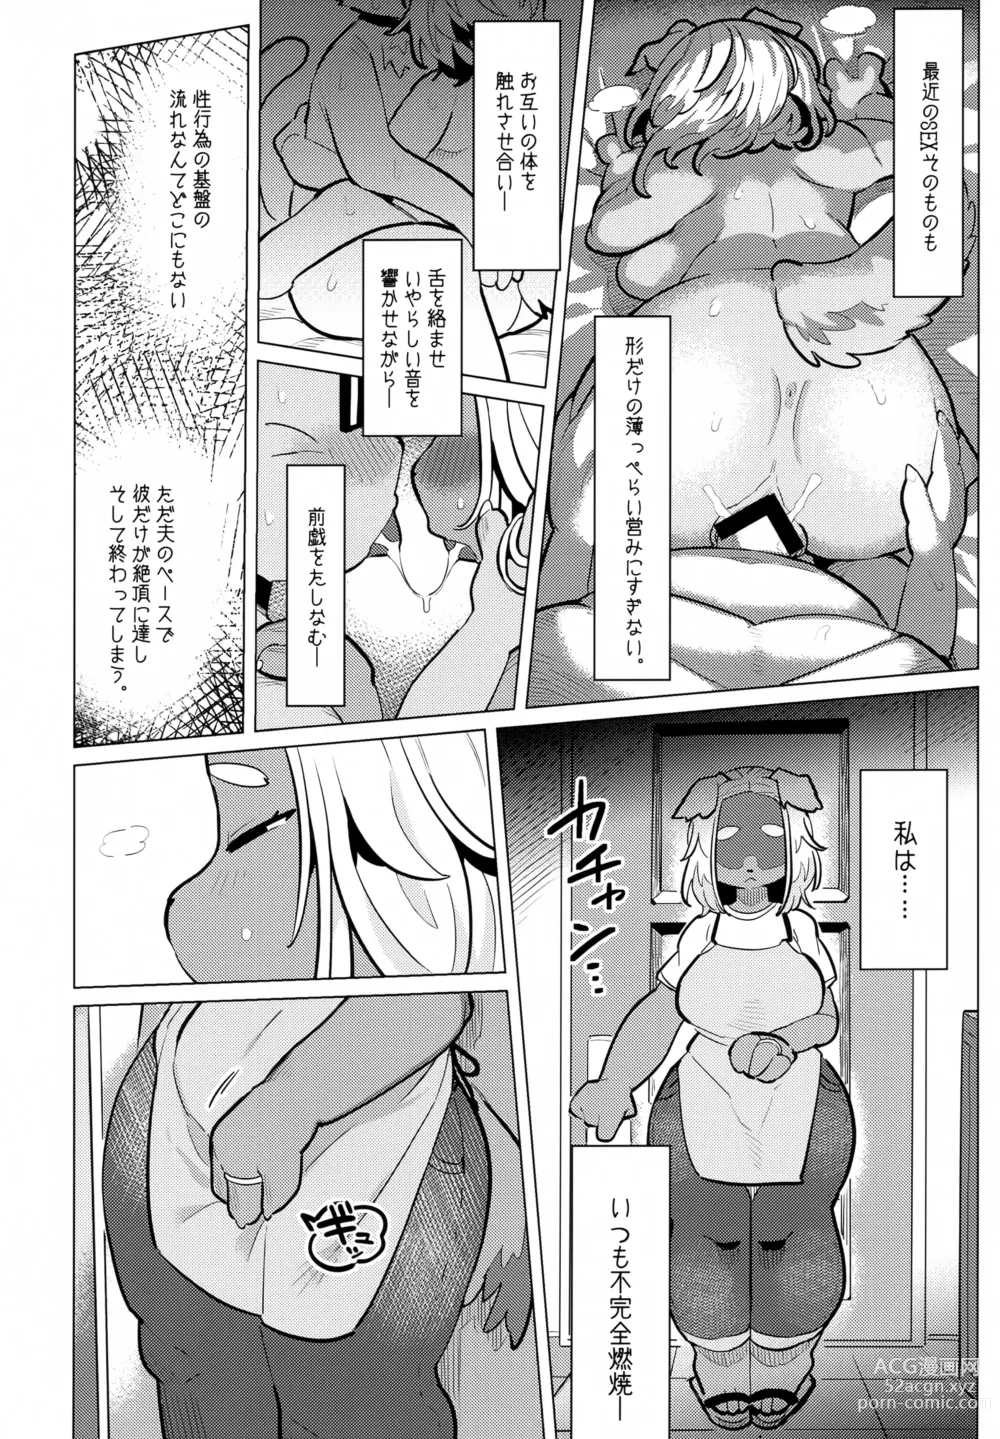 Page 5 of doujinshi Bonnou - Desire